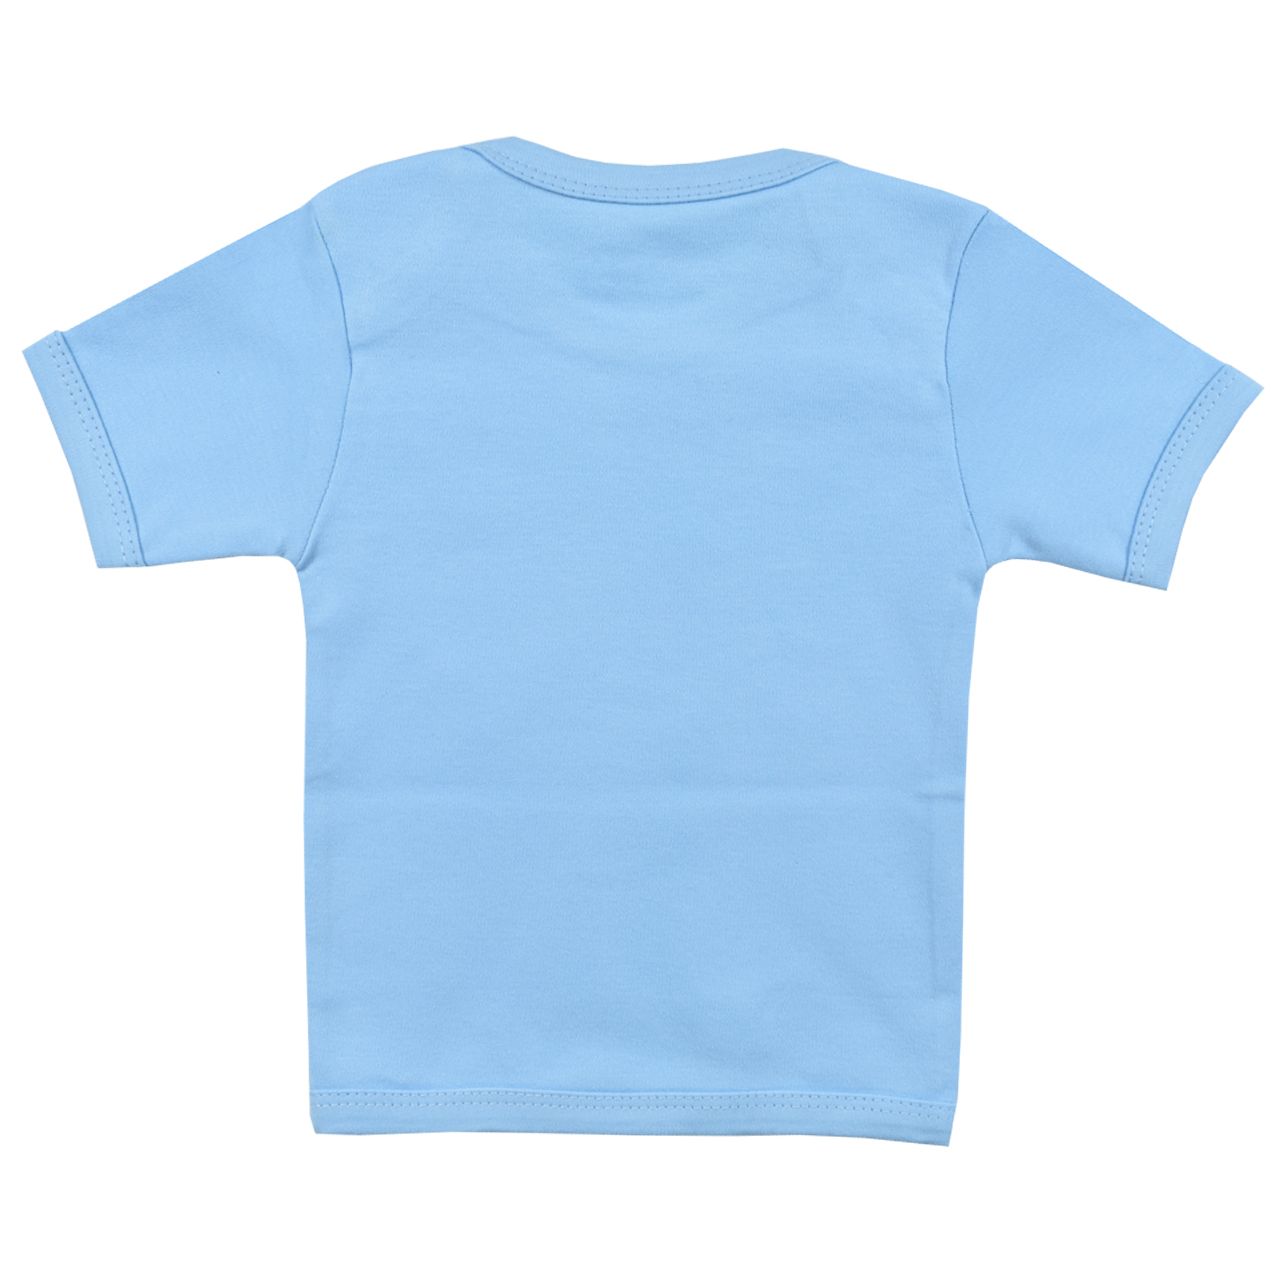 تی شرت آستین کوتاه نوزادی اسپیکو مدل کاج کد 2 -  - 3